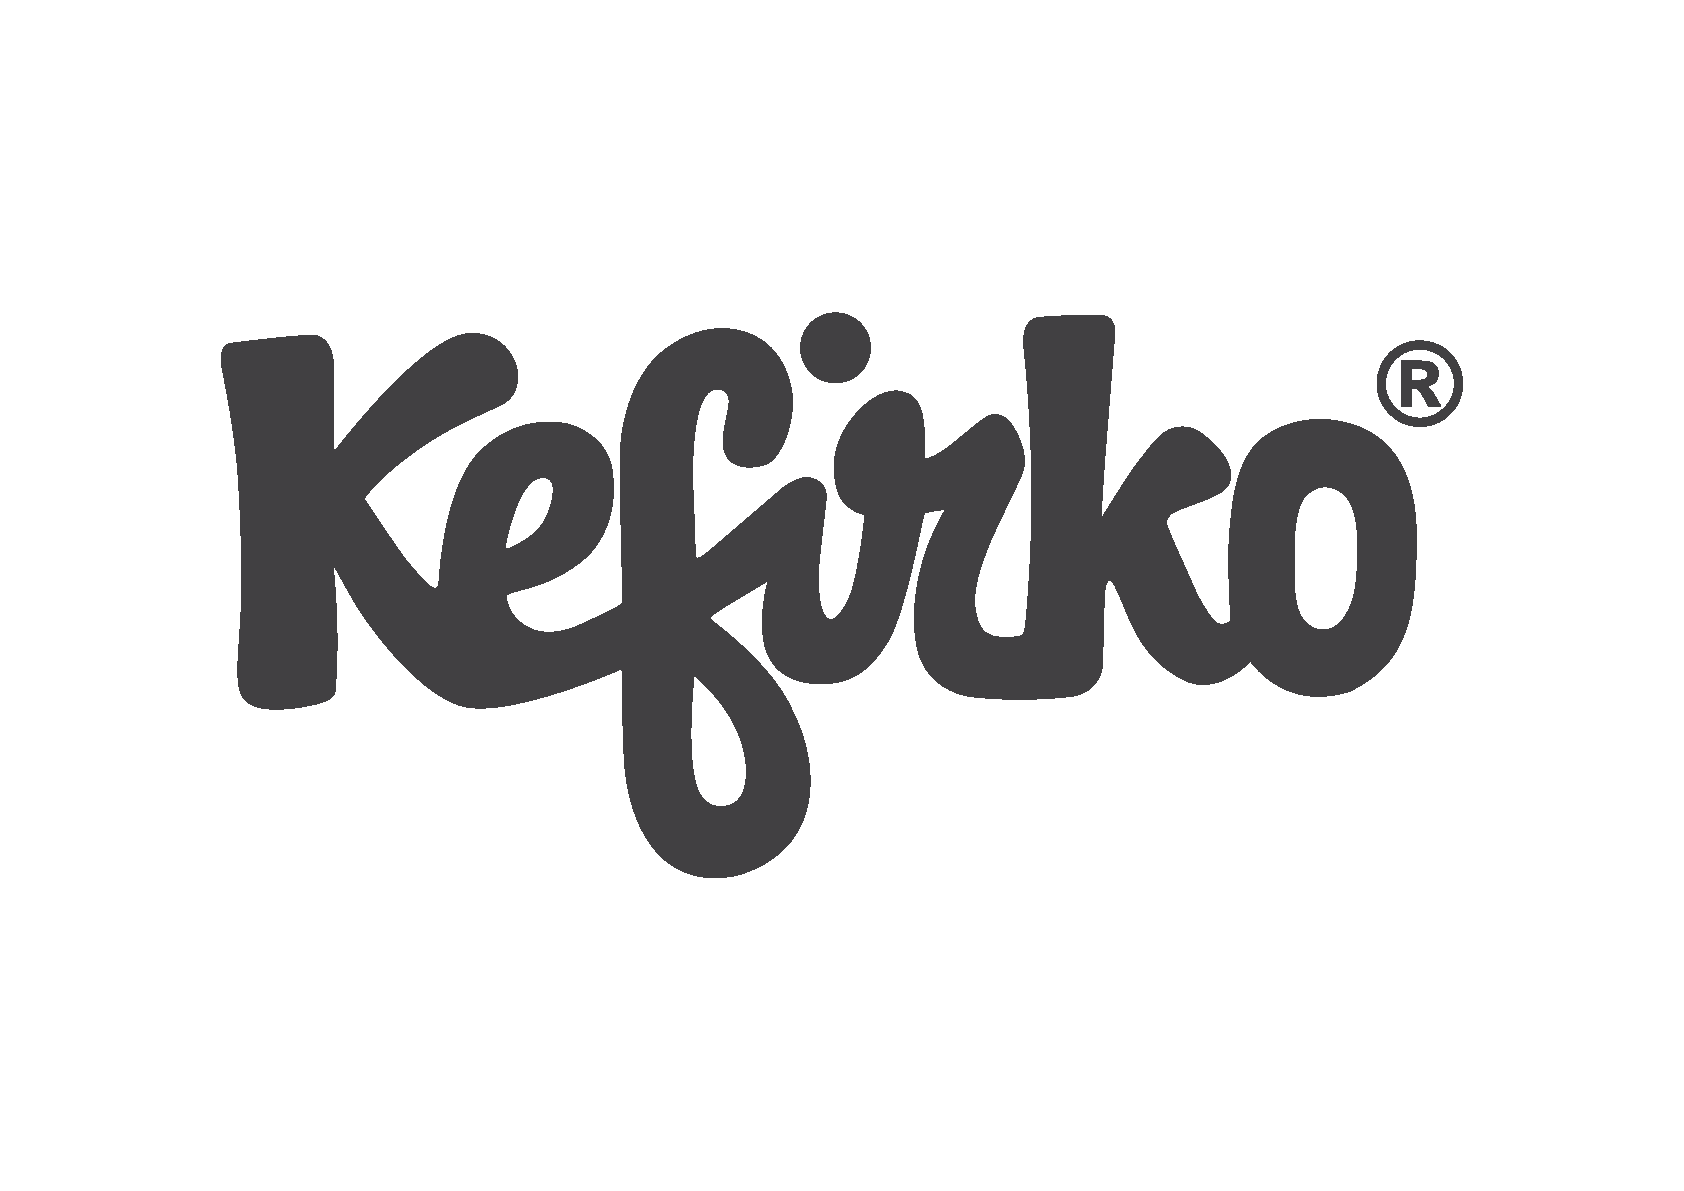 Kefirko Recipes